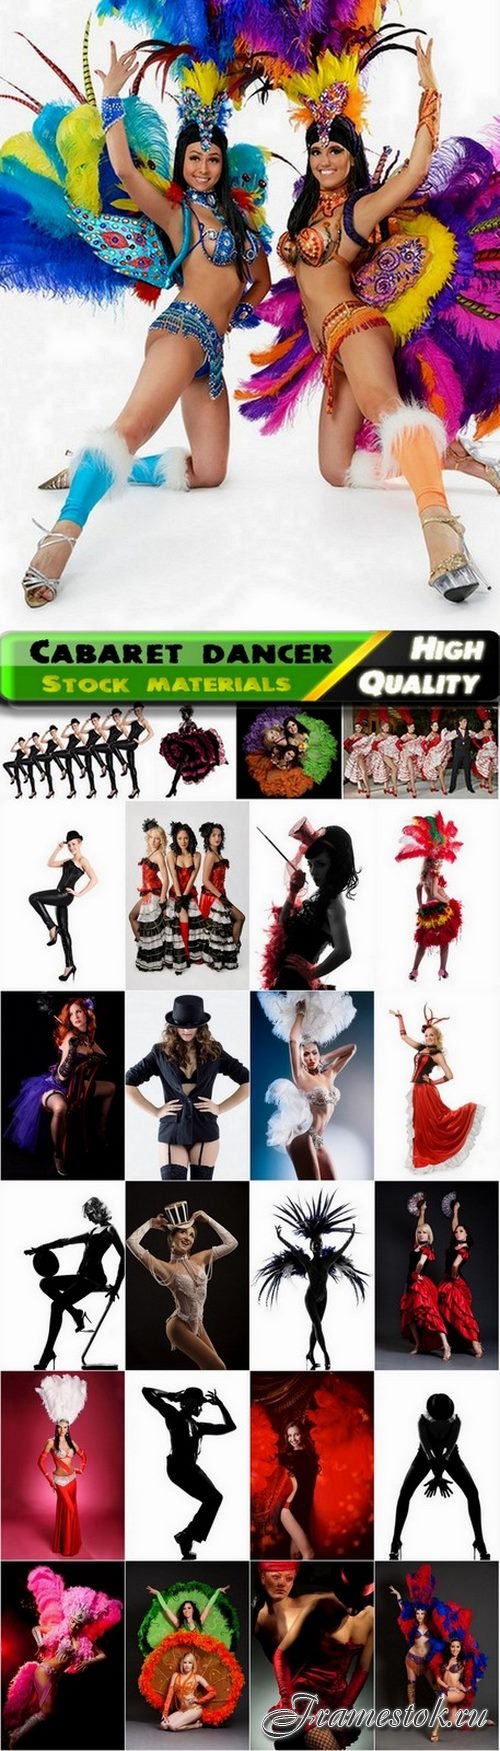 Beautiful erotic women cabaret dancers - 25 HQ Jpg